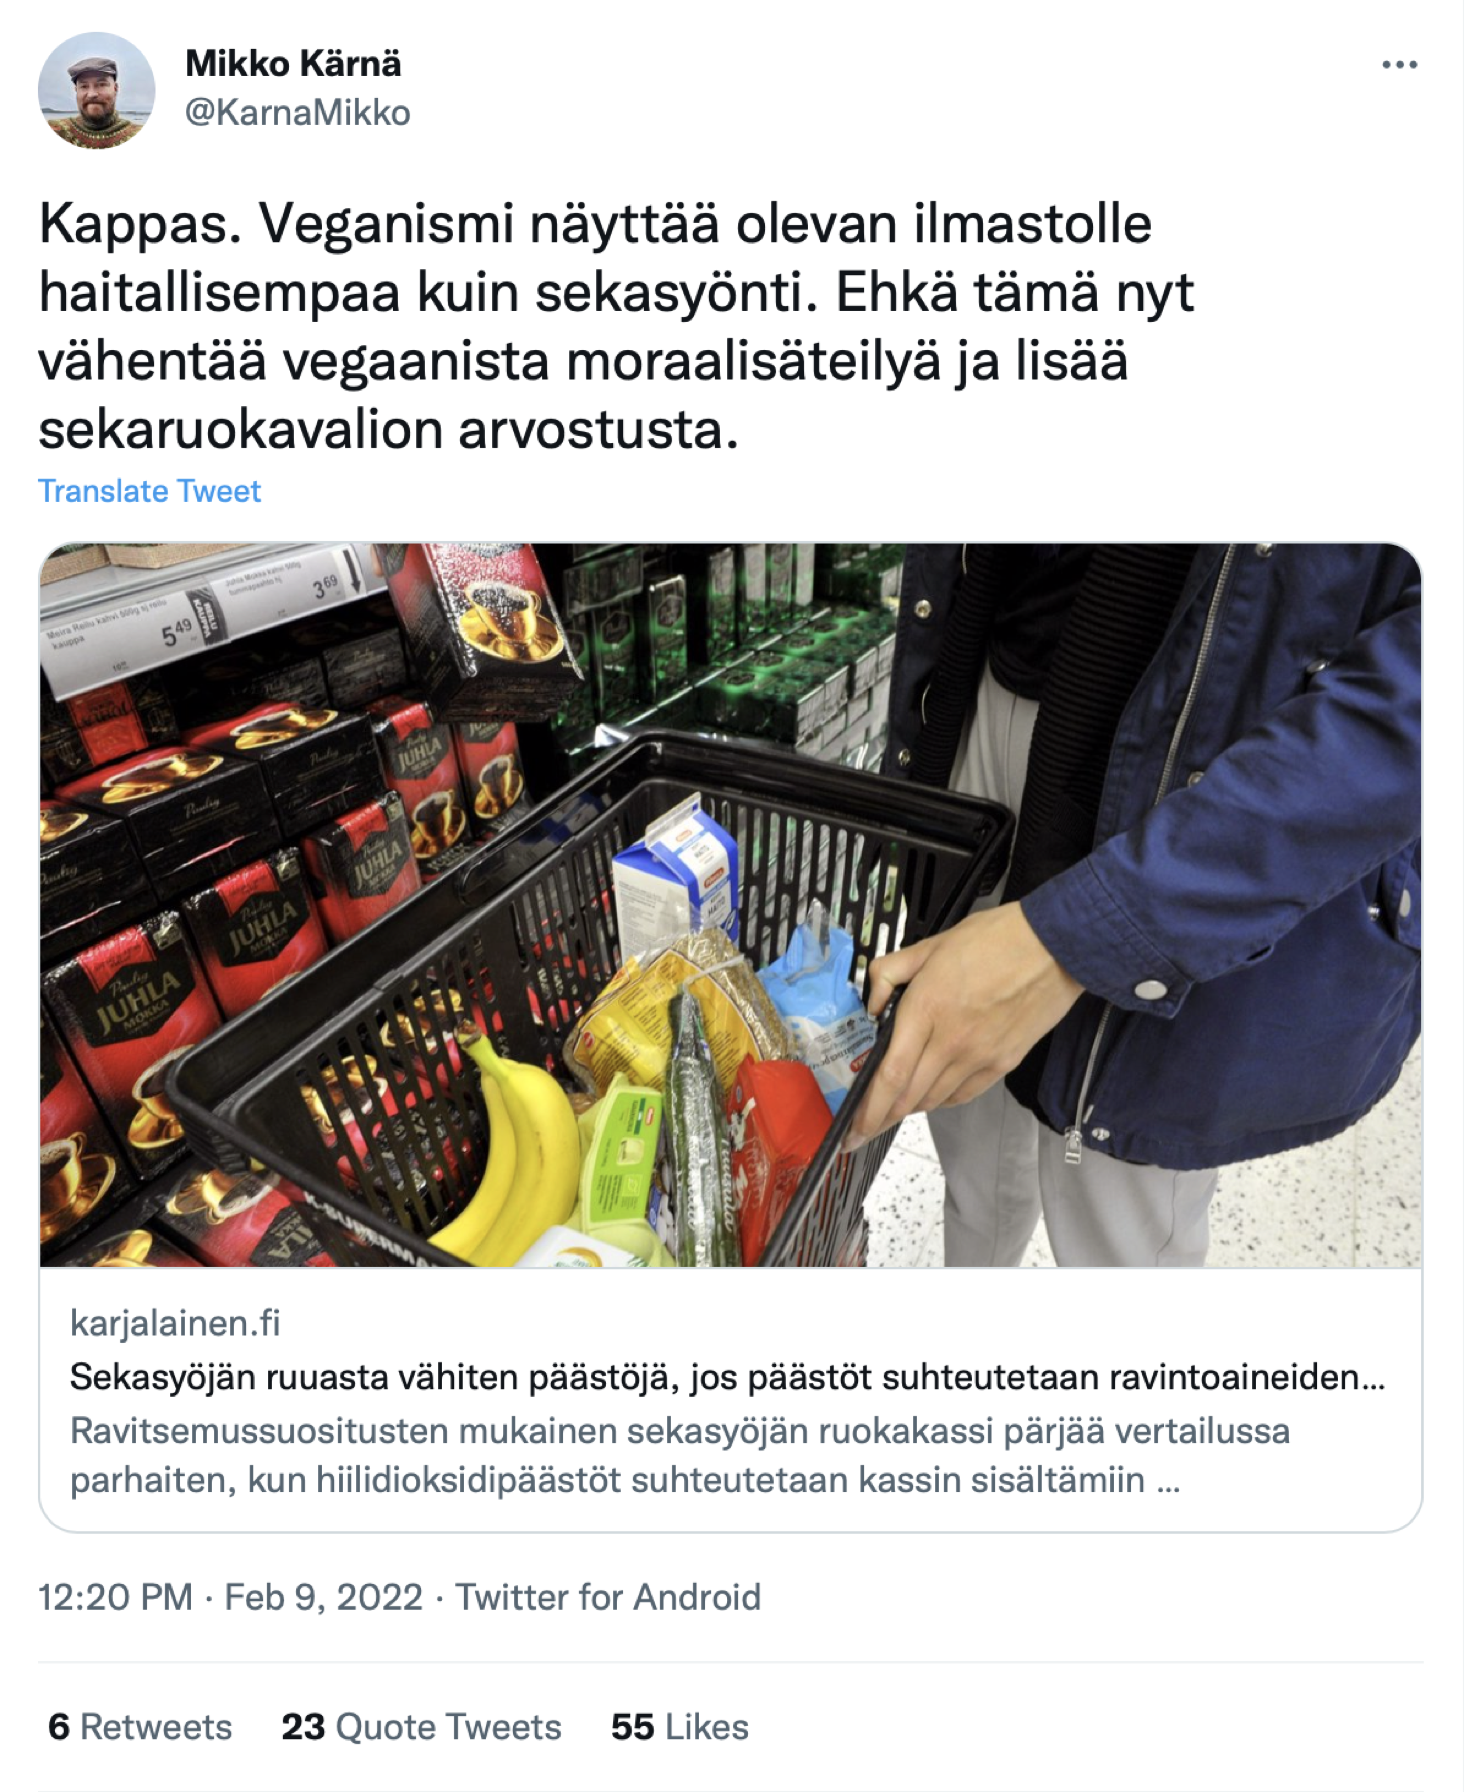 Ruutukaappaus kansanedustaja Mikko Kärnän twiitistä. Teksti: "Kappas. Veganismi näyttää olevan ilmastolle haitallisempaa kuin sekasyönti. Ehkä tämä nyt vähentää vegaanista moraalisäteilyä ja lisää sekaruokavalion arvostusta.”